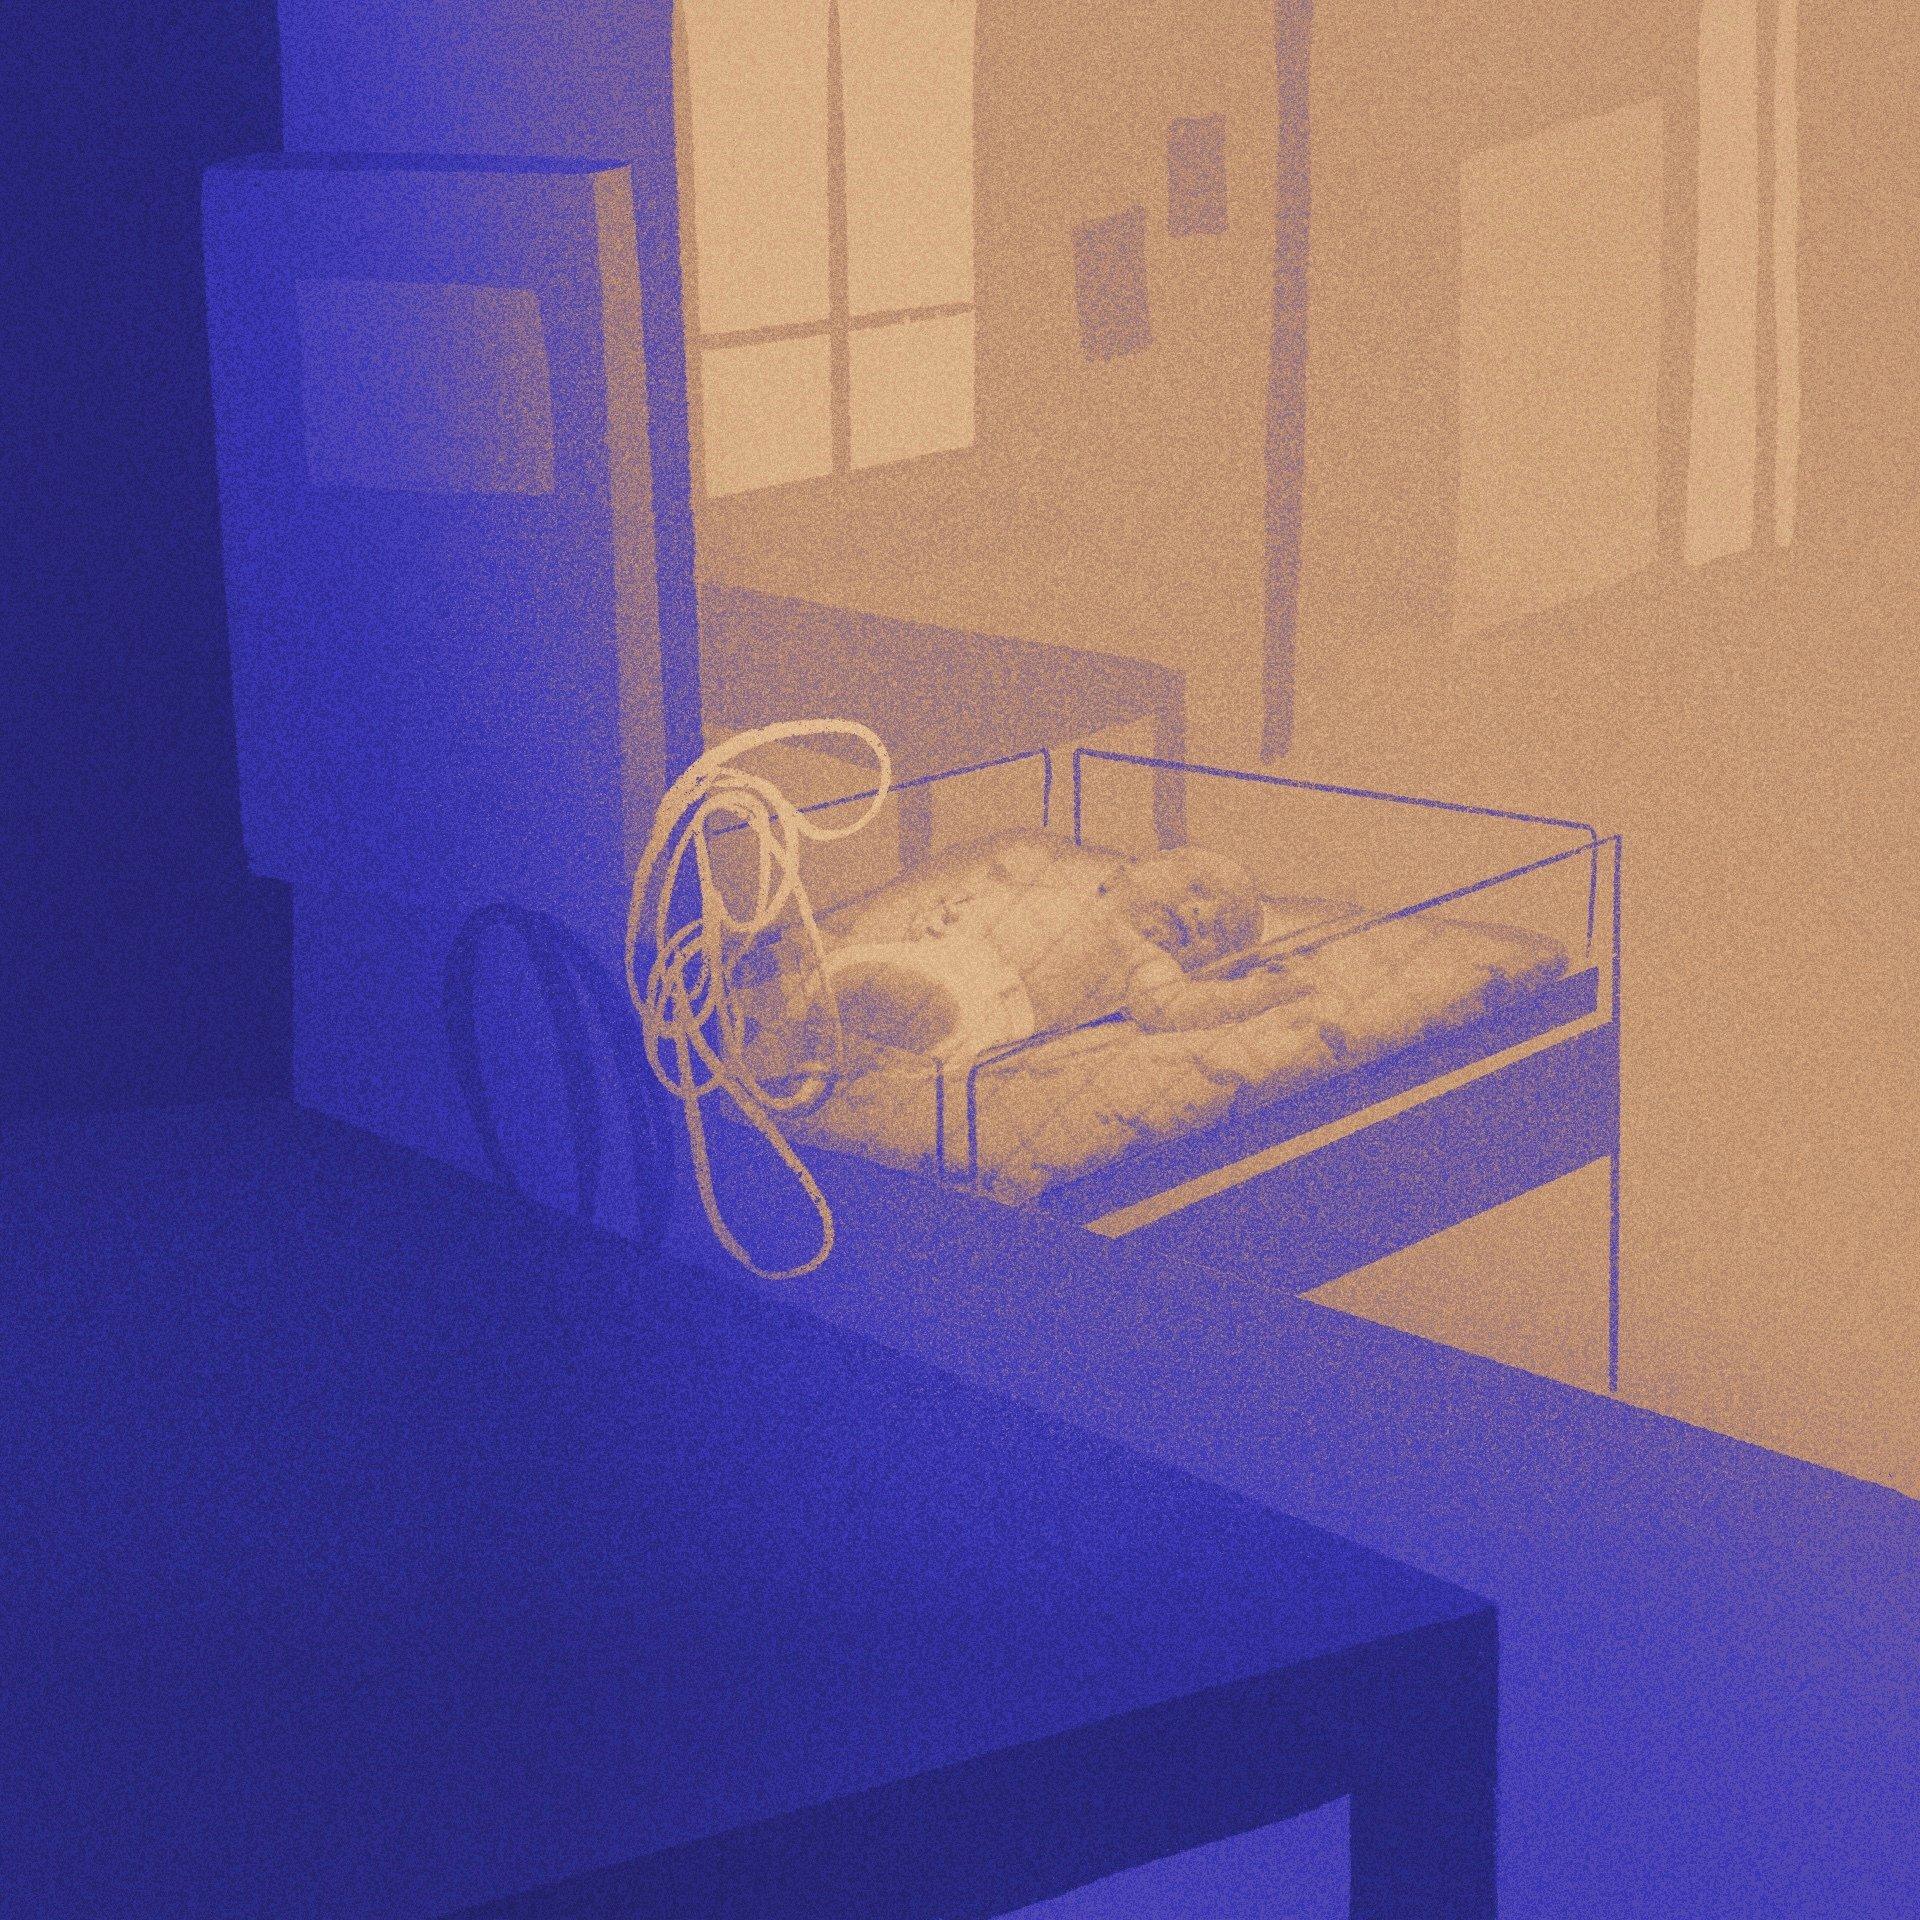 Ilustracja przedstawiająca niemowlaka w szpitalnym łóżeczku. Niechciane dzieci z Charkowa.